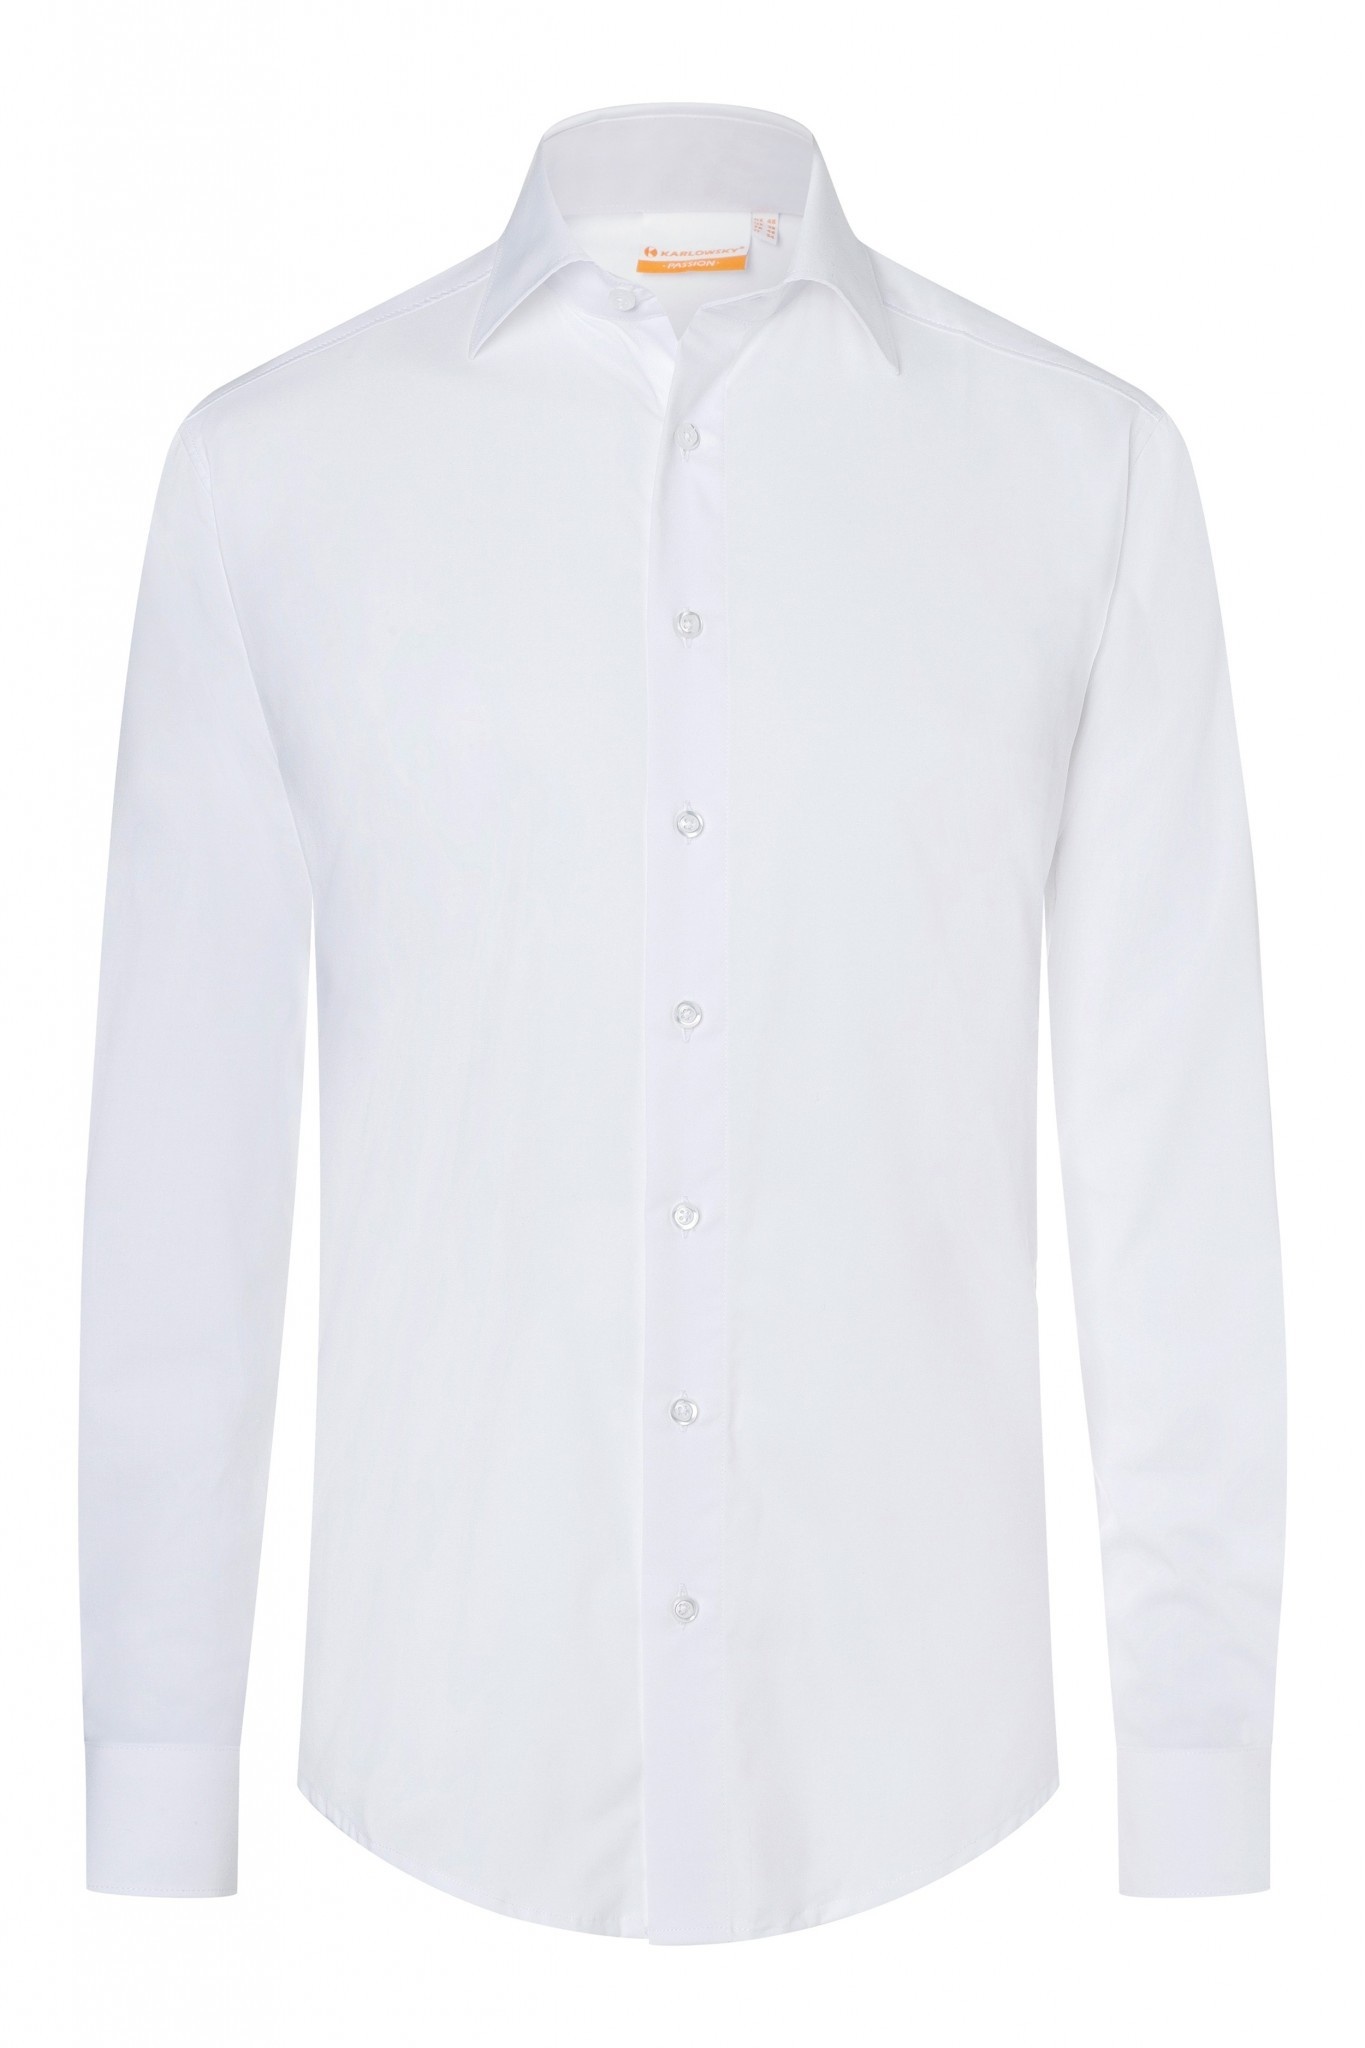 Herrenhemd Miro | Weiß | 49% Polyester / 49% Baumwolle / 2% Elastolefin | Erhältlich in 8 Größen